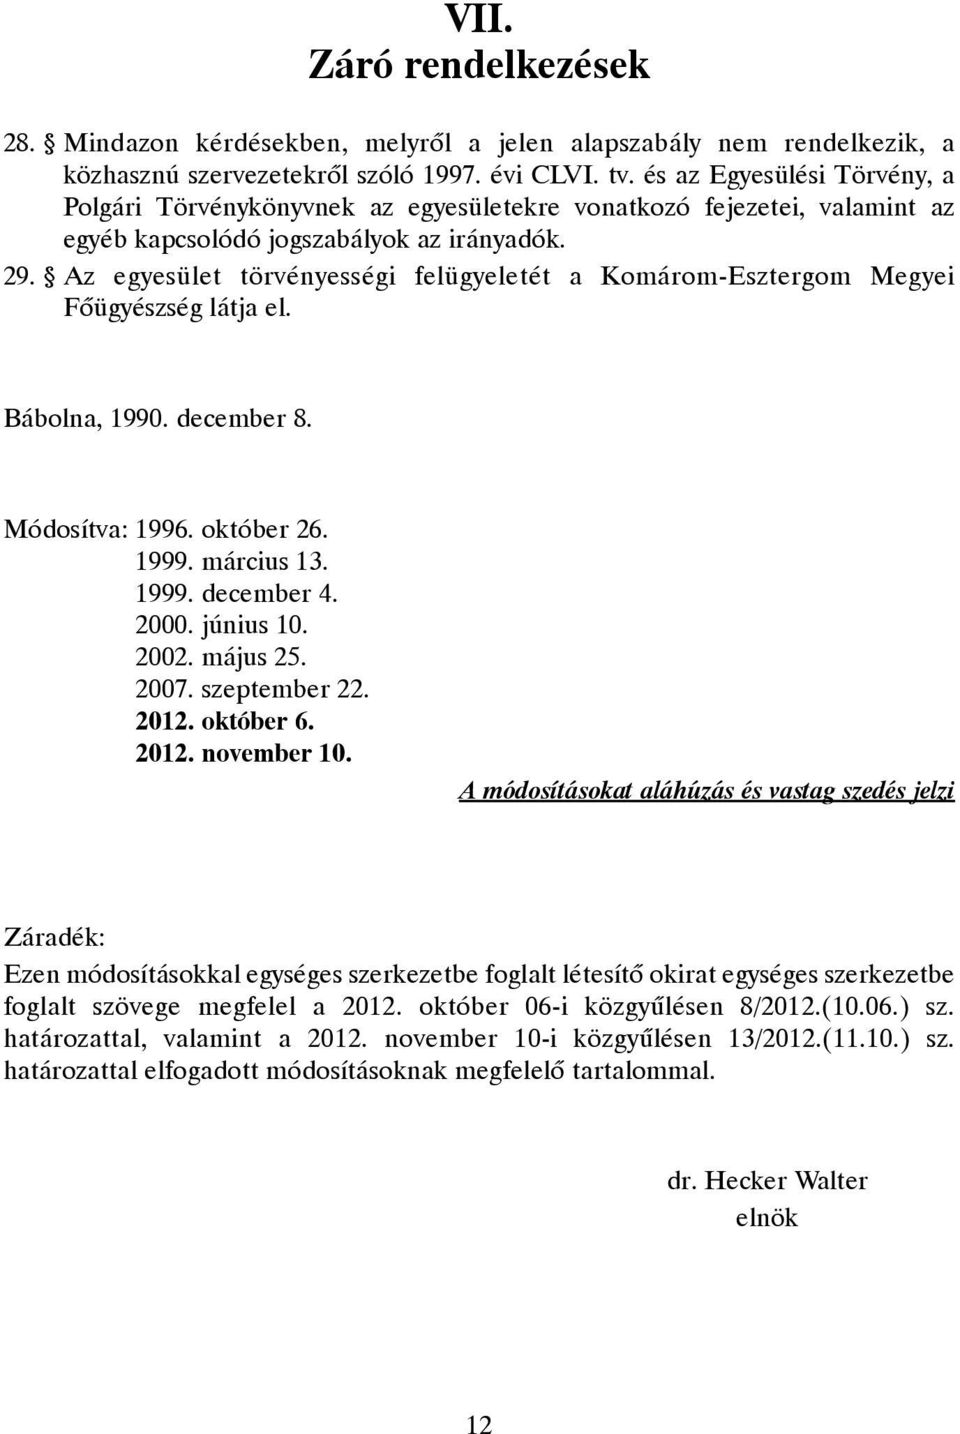 Az egyesület törvényességi felügyeletét a Komárom-Esztergom Megyei Fõügyészség látja el. Bábolna, 1990. december 8. Módosítva: 1996. október 26. 1999. március 13. 1999. december 4. 2000. június 10.